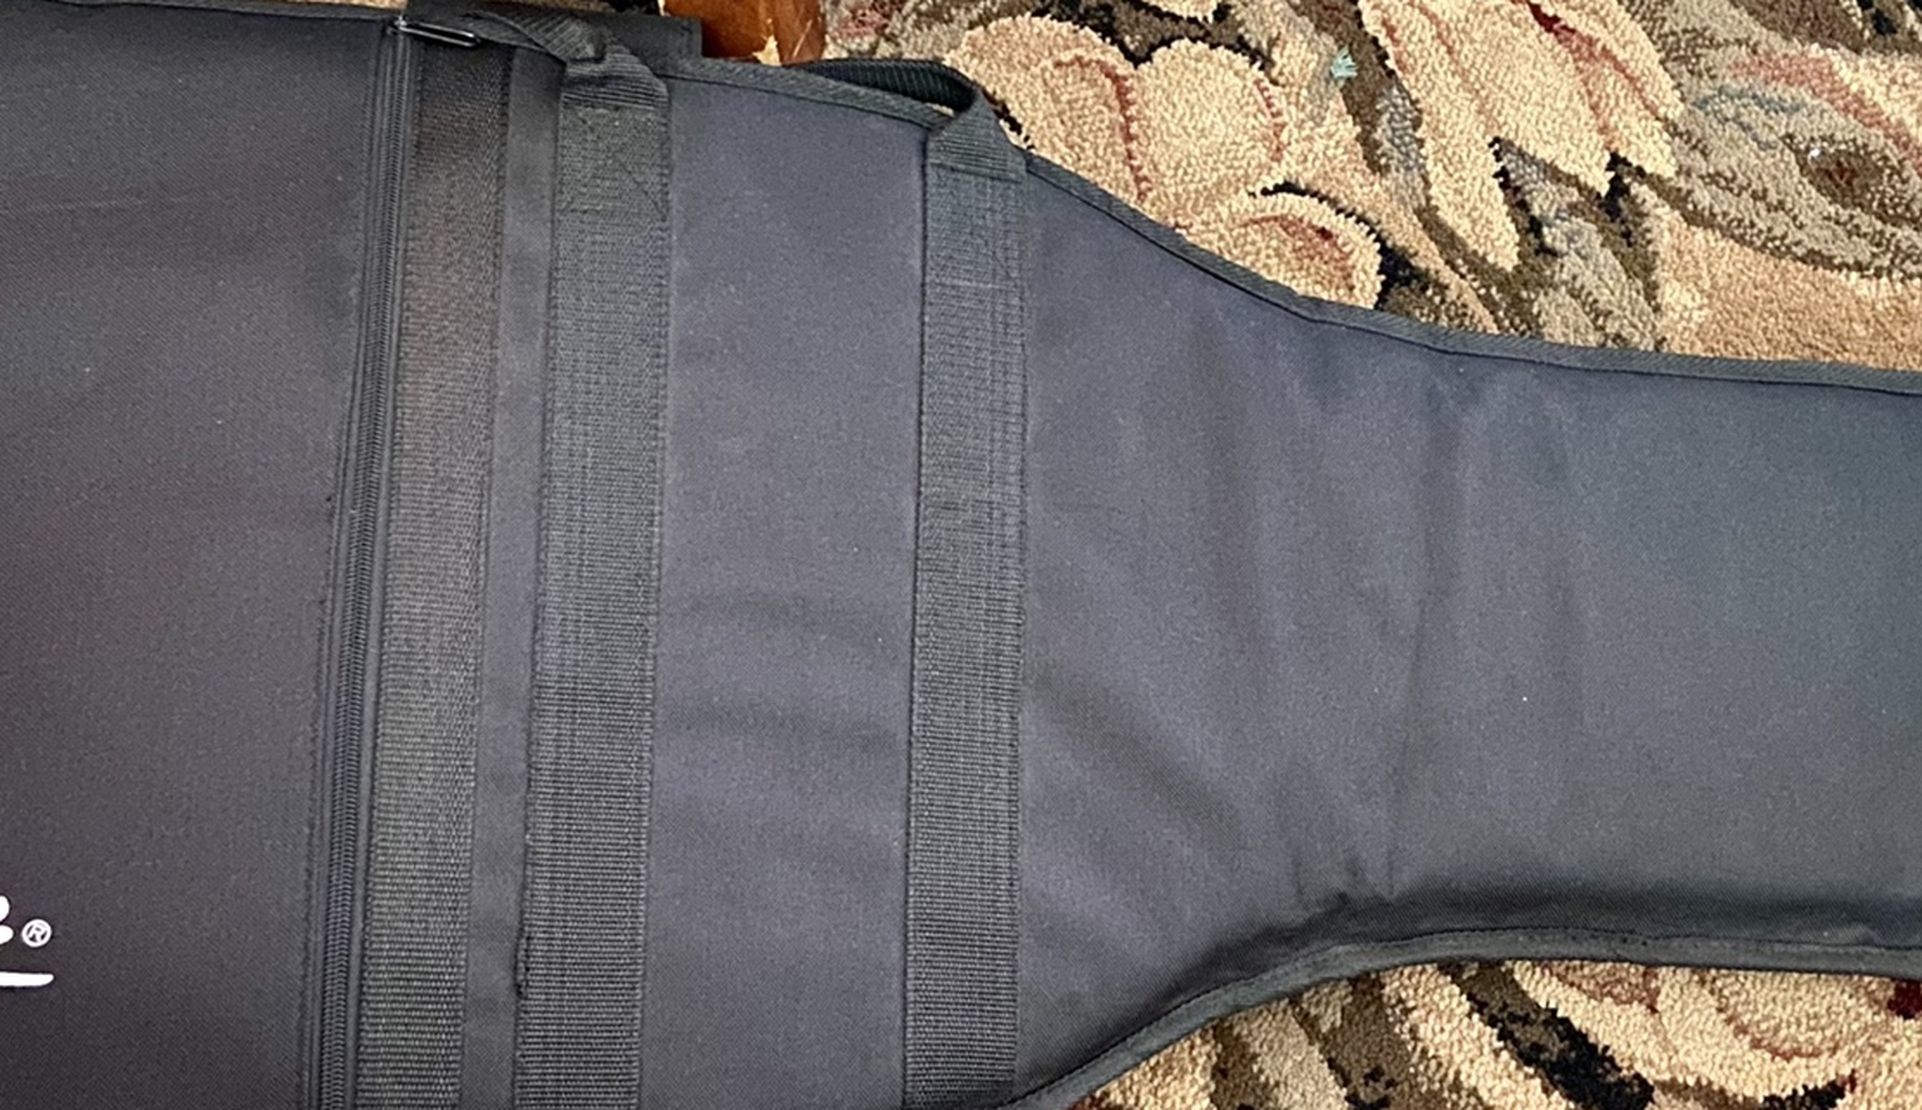 Black Fender Gig Padded Guitar Bag Case For Electric Guitar With Adjustable Backpack Carrier Straps